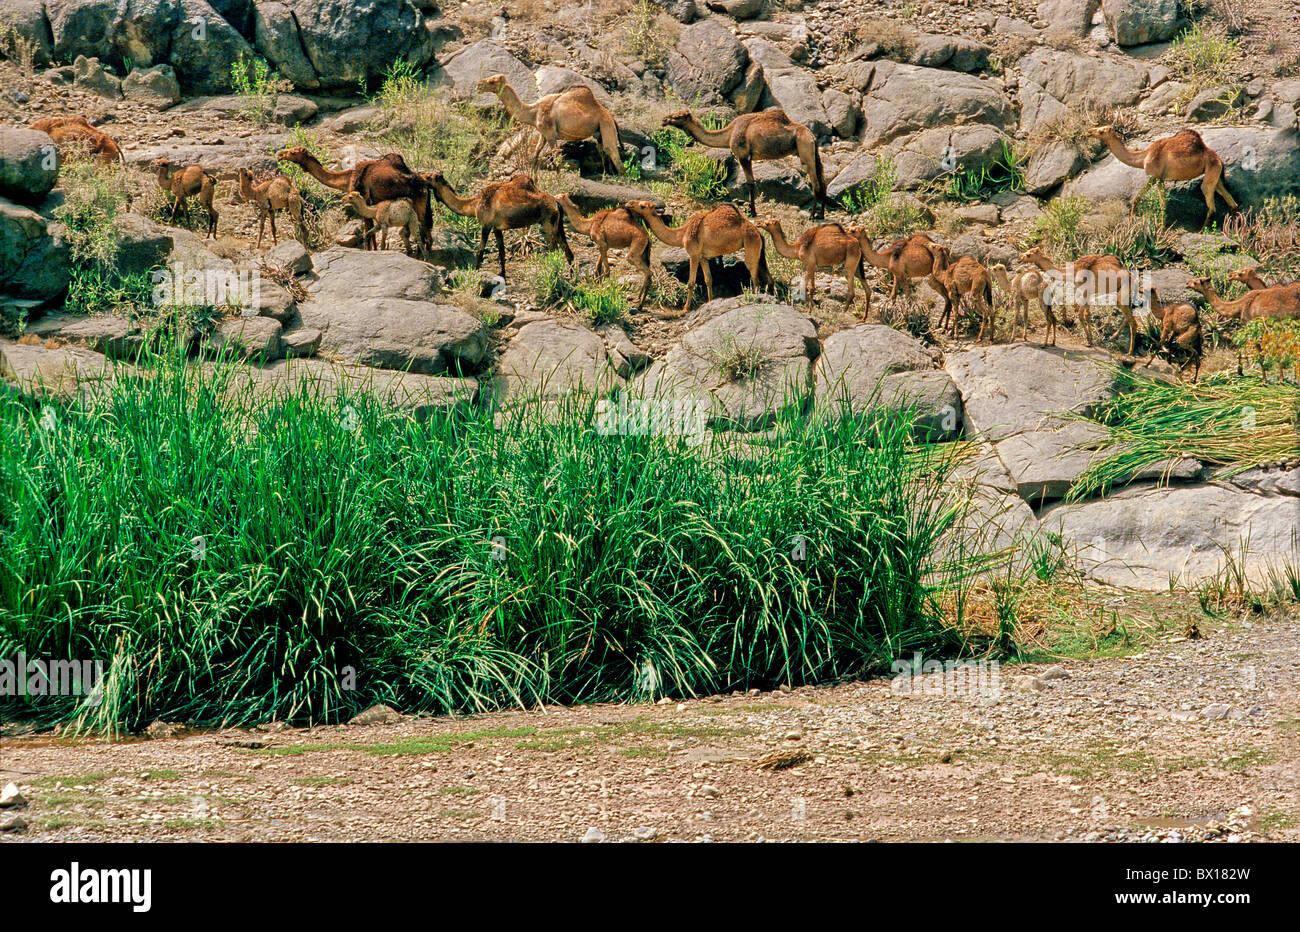 Le dromadaire Camelus dromedarius Highlands du Nord Yémen Saoudite animaux d'Orient Banque D'Images